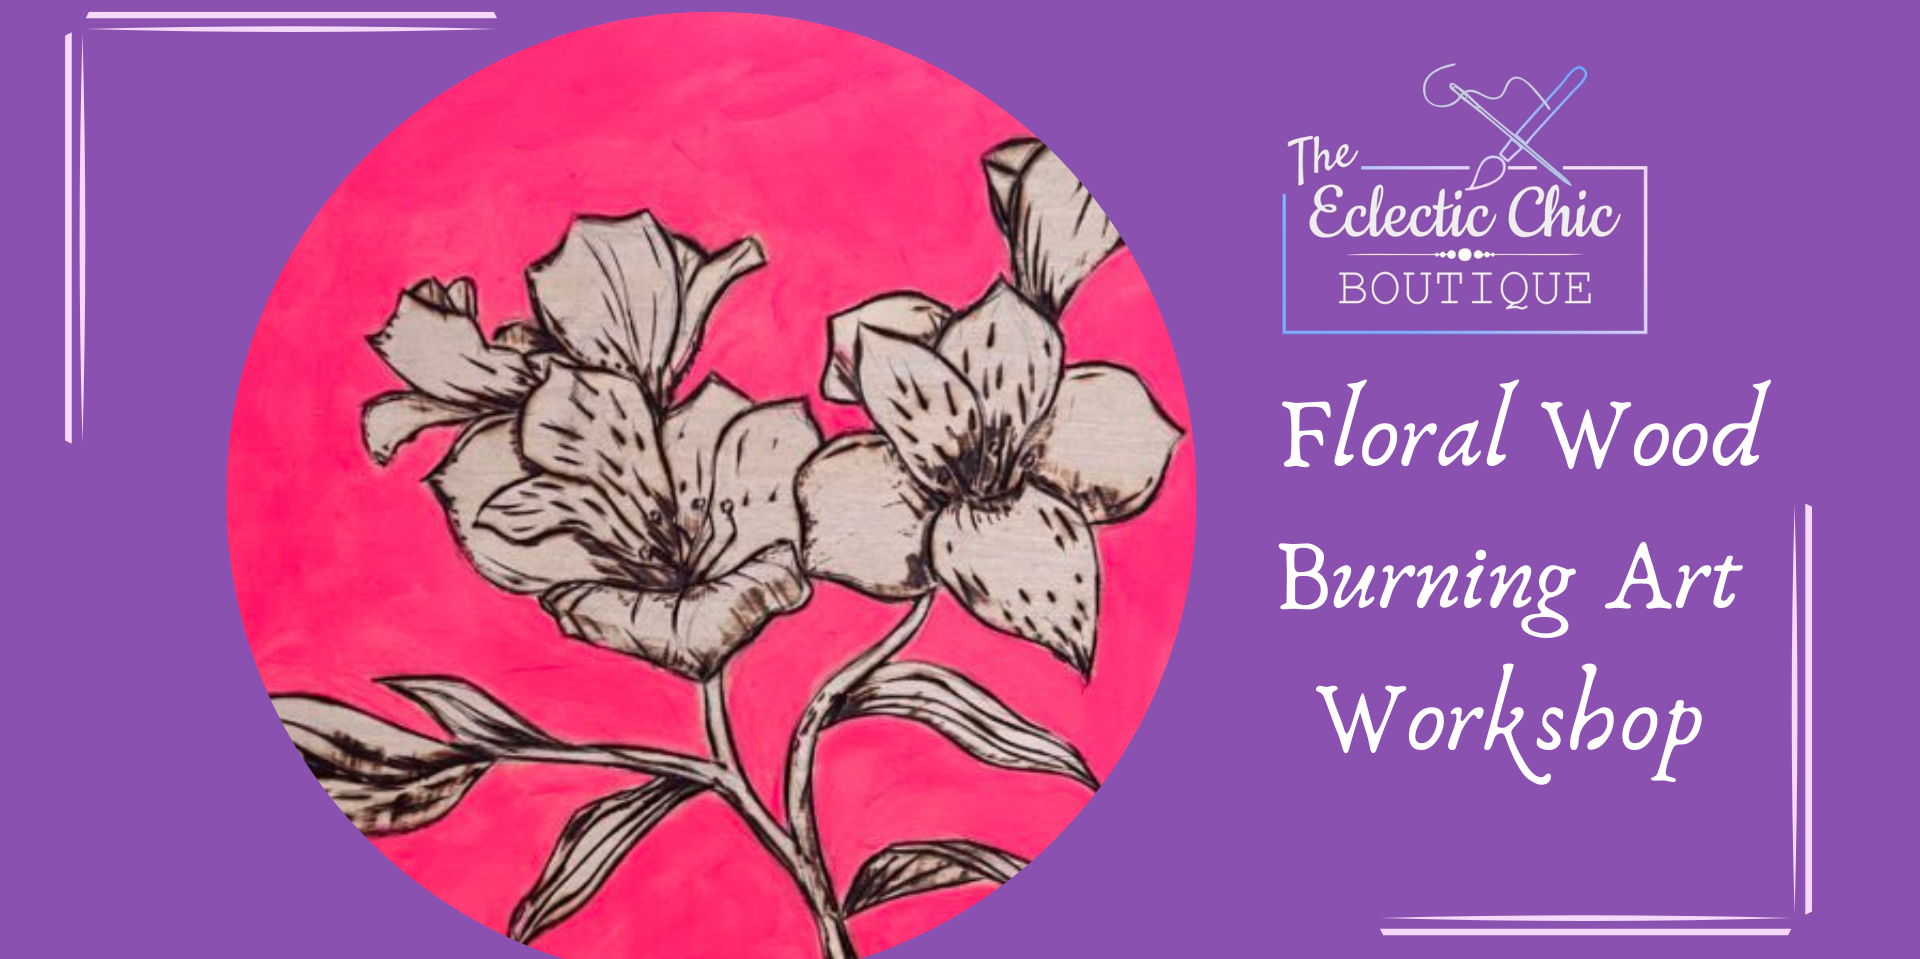 Floral Wood Burning Art Workshop promotional image